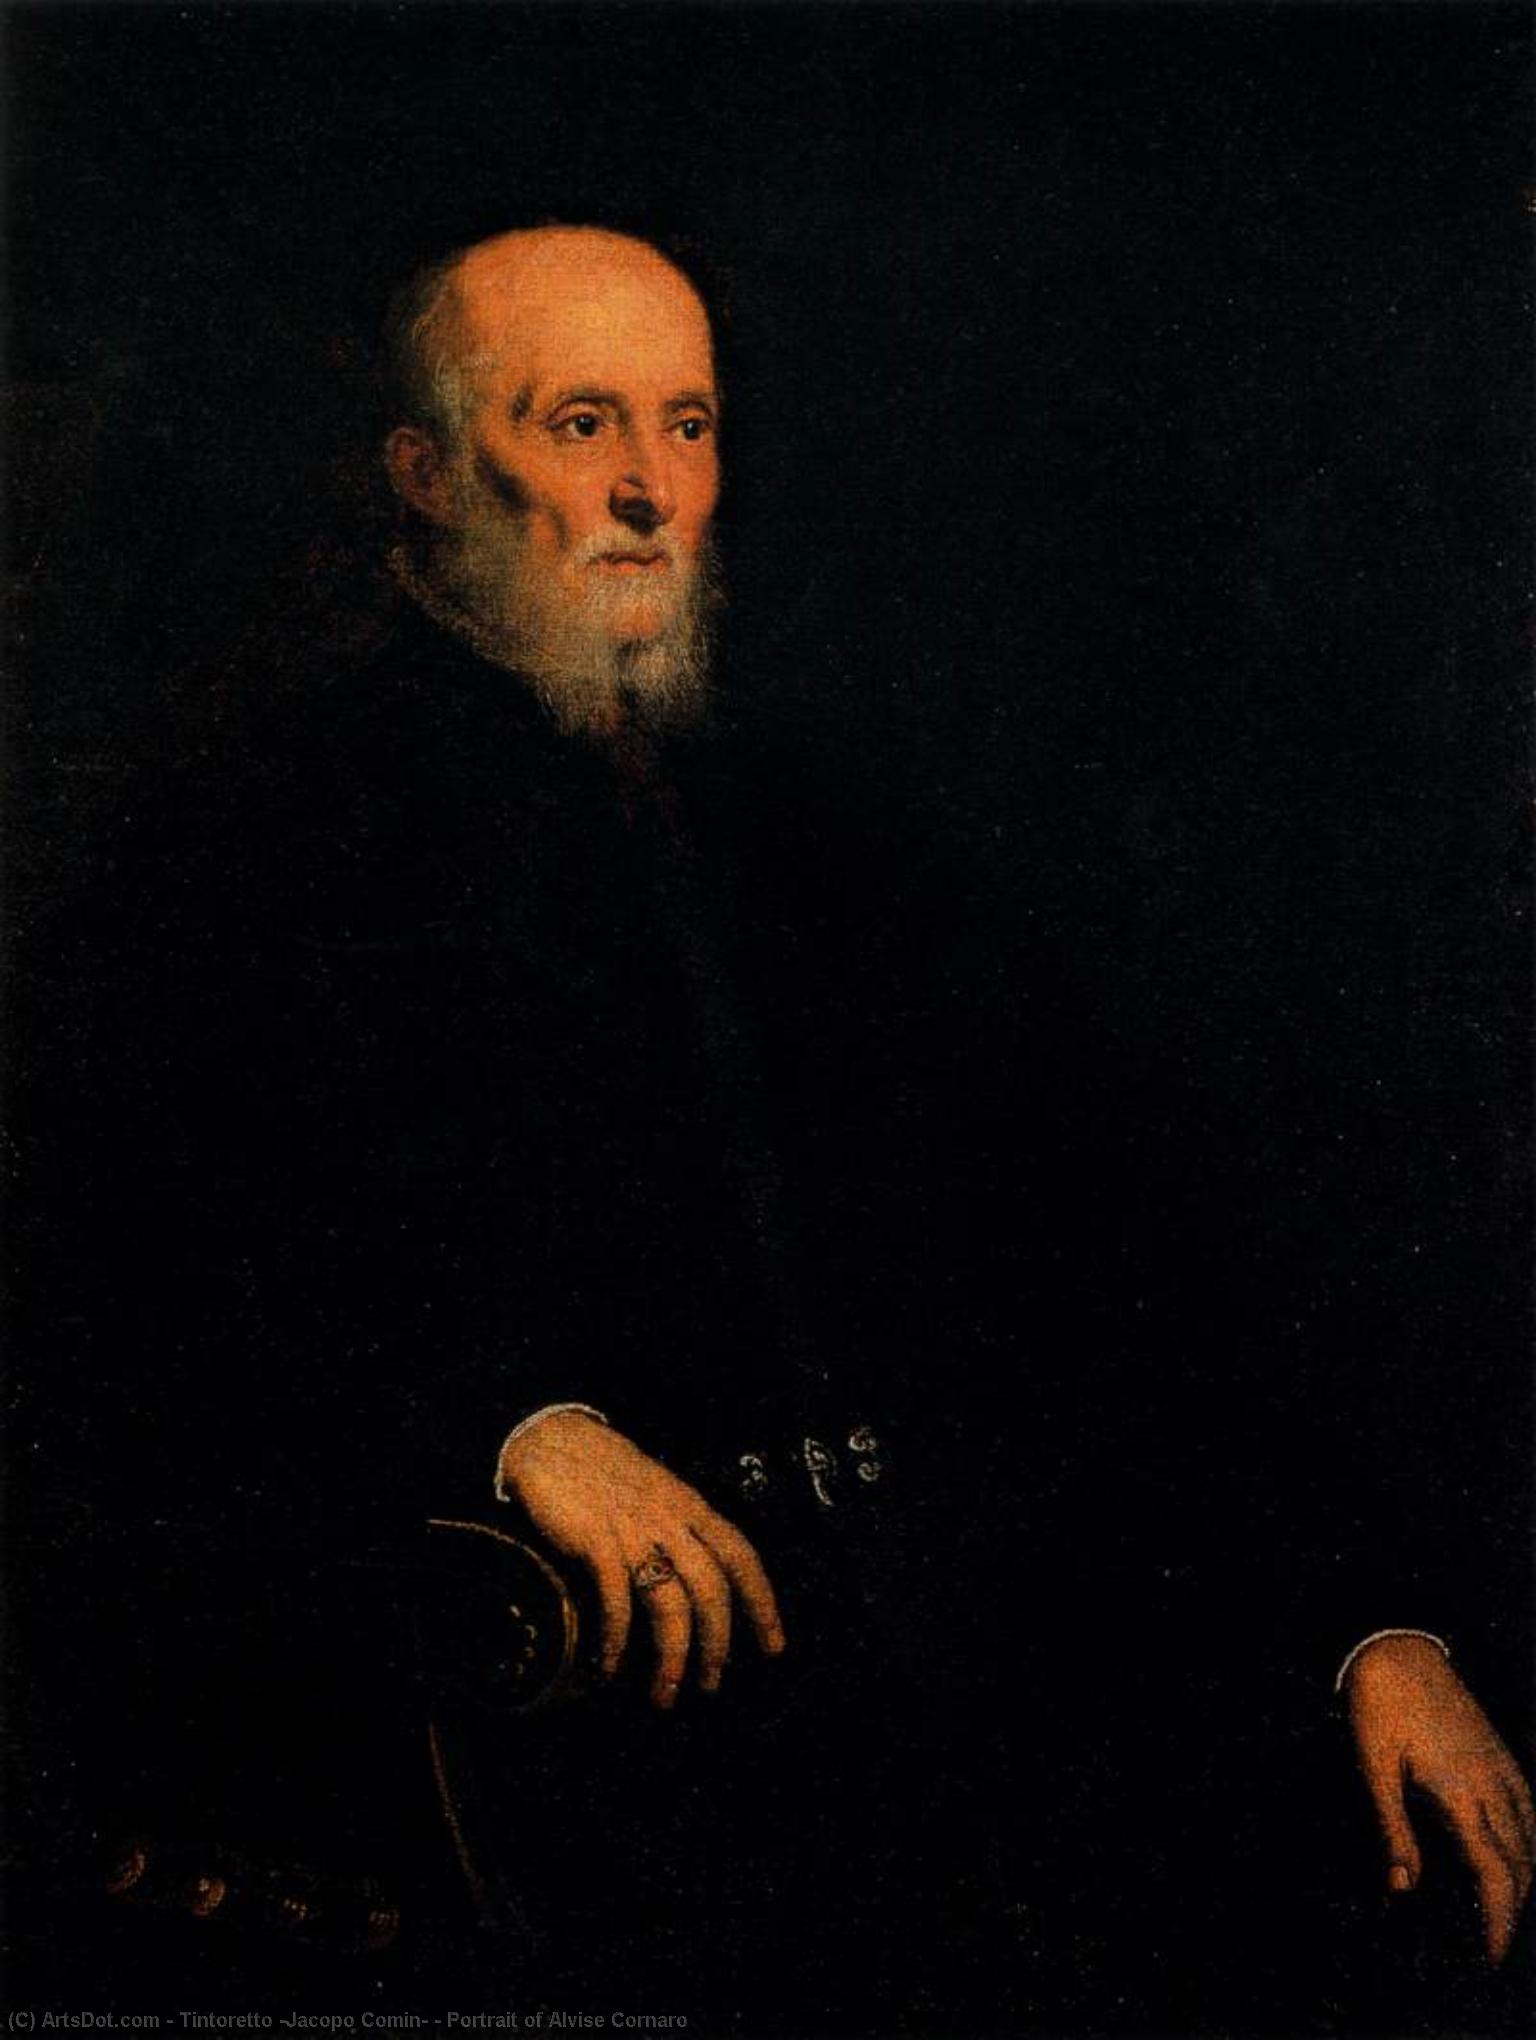 WikiOO.org - Encyclopedia of Fine Arts - Malba, Artwork Tintoretto (Jacopo Comin) - Portrait of Alvise Cornaro